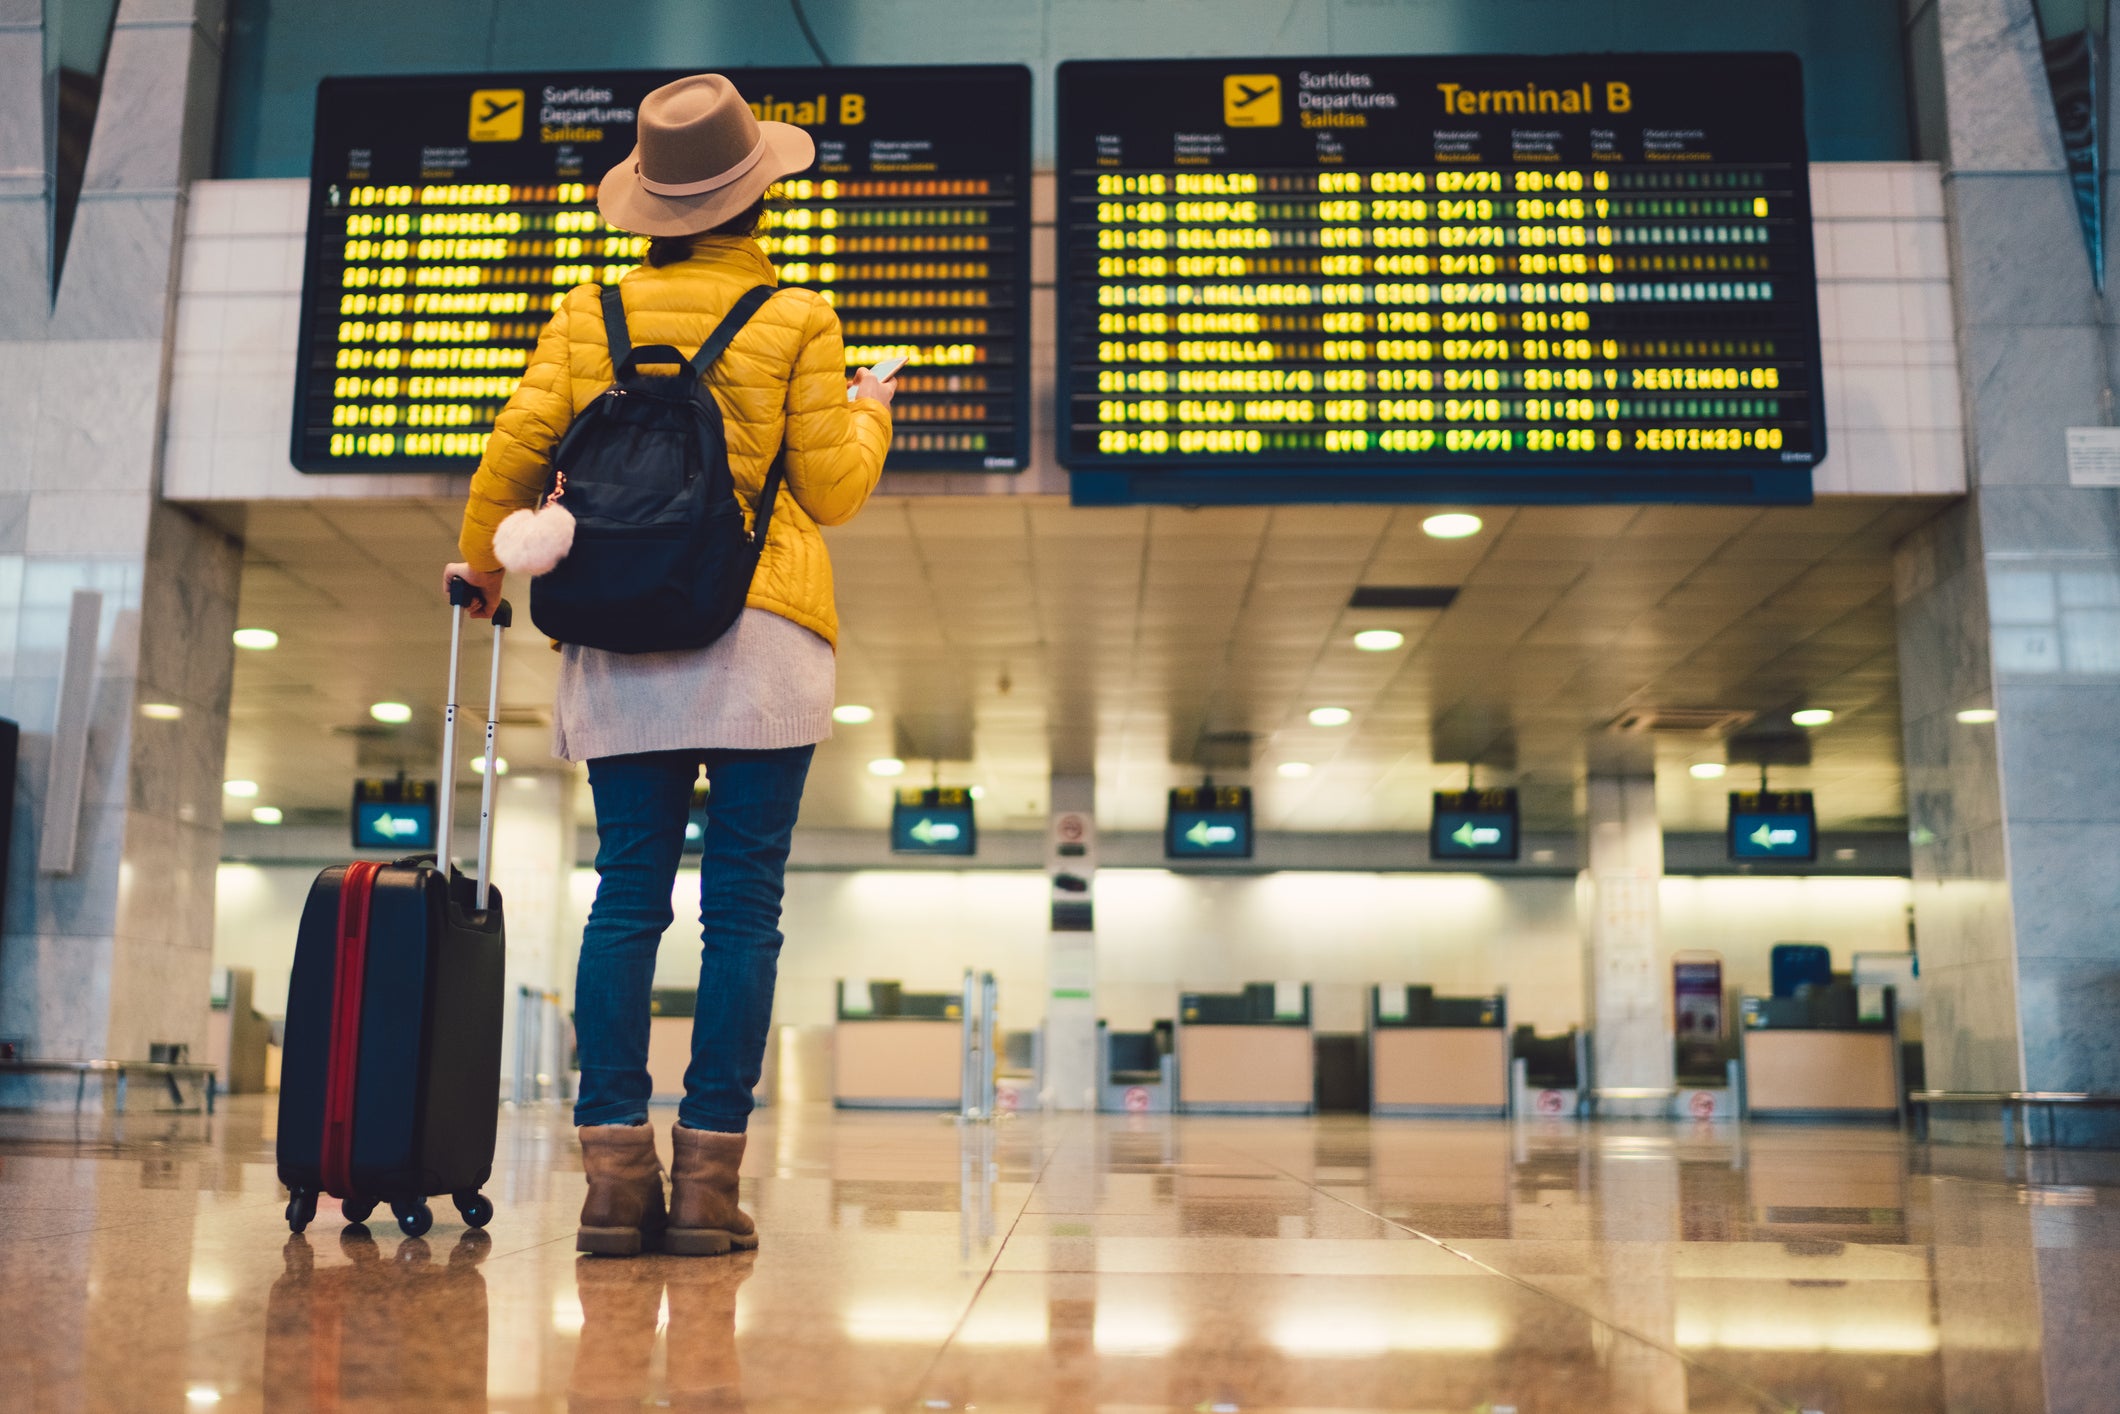 Last year saw travel chaos at UK airports